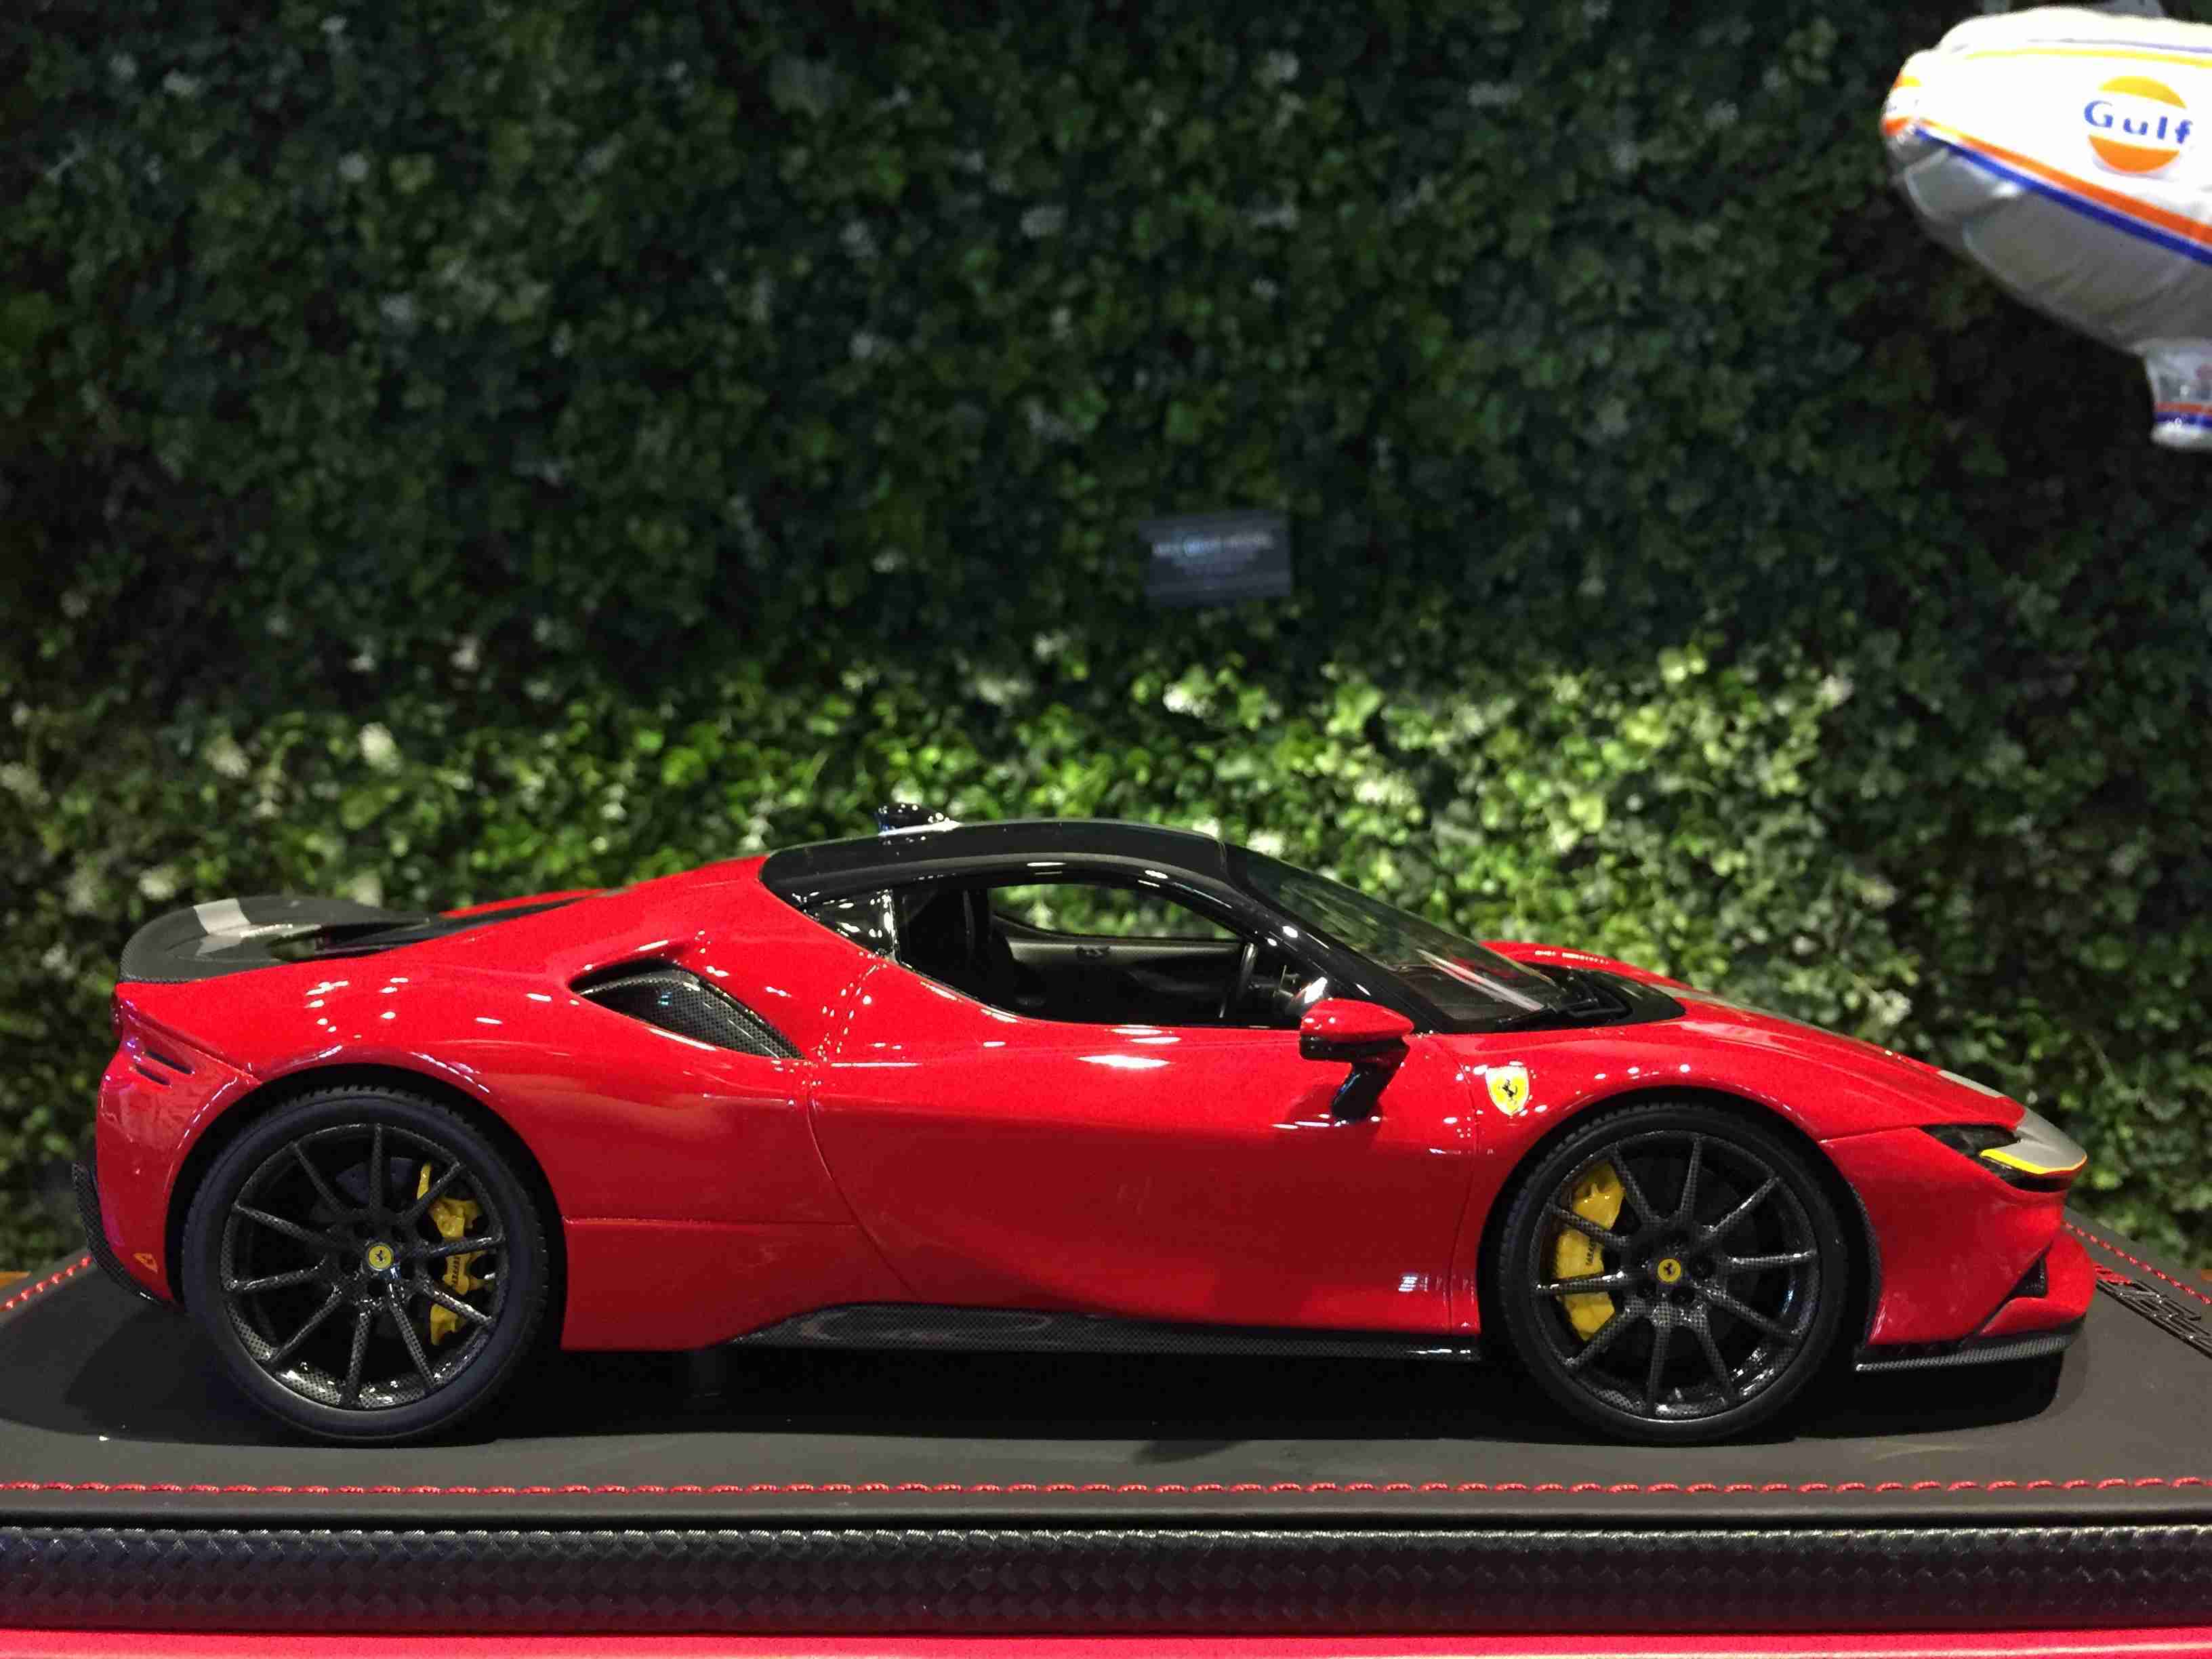 1/18 MR Ferrari SF90 Stradale Rosso Corsa FE028D【MGM】